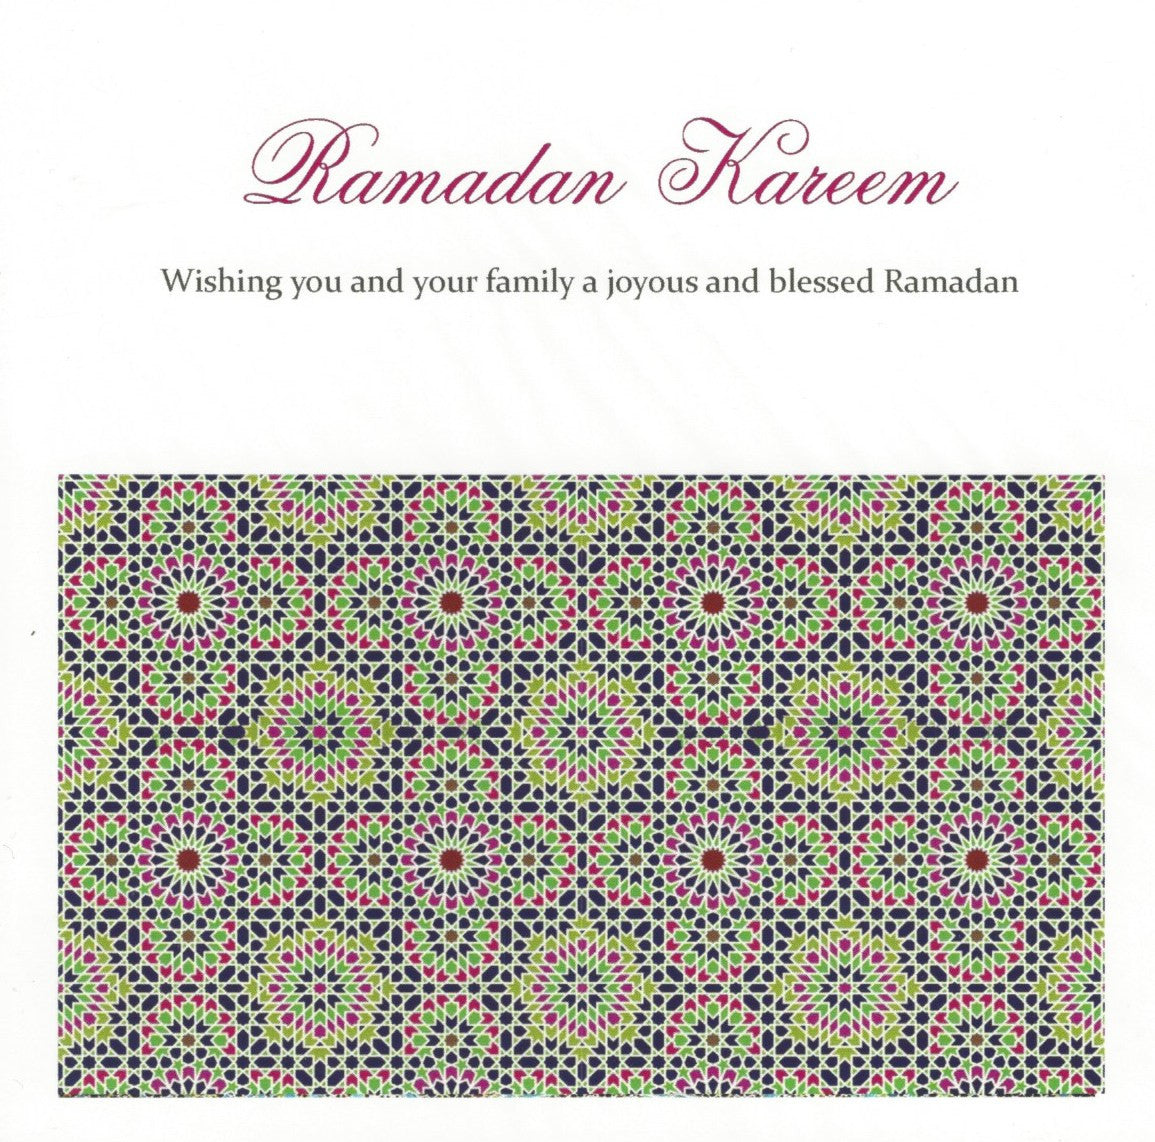 Ramadan Kareem Design 2, Islamic Cards - Daybreak International Bookstore, Daybreak Press Global Bookshop
 - 2